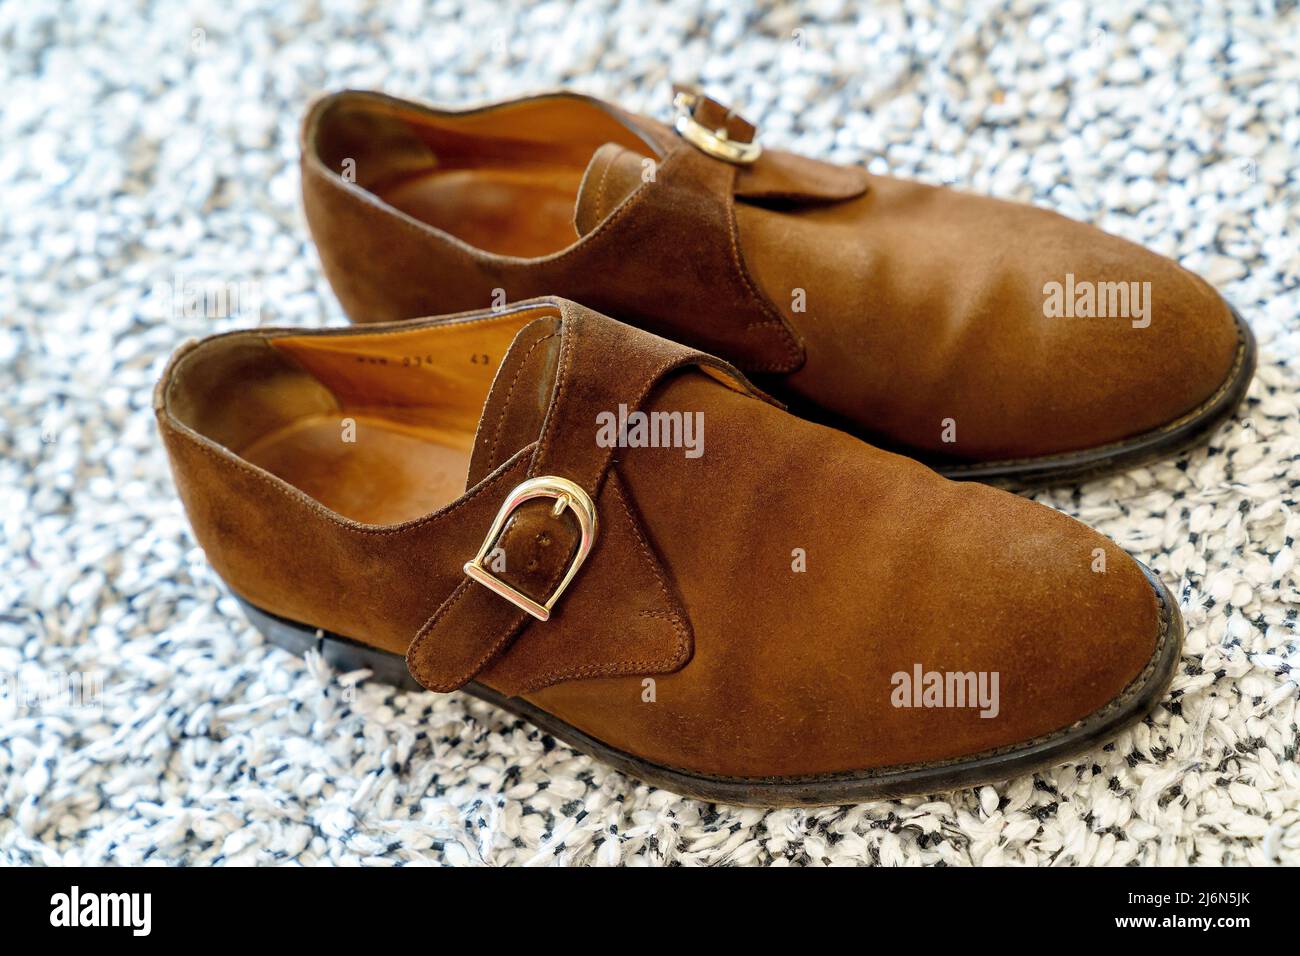 Monk-Typ Schuh, braunes Veloursleder auf Ledersohle und Holzabsatz genäht, mit Schnallenverschluss, kleiden Schuhe. Stockfoto